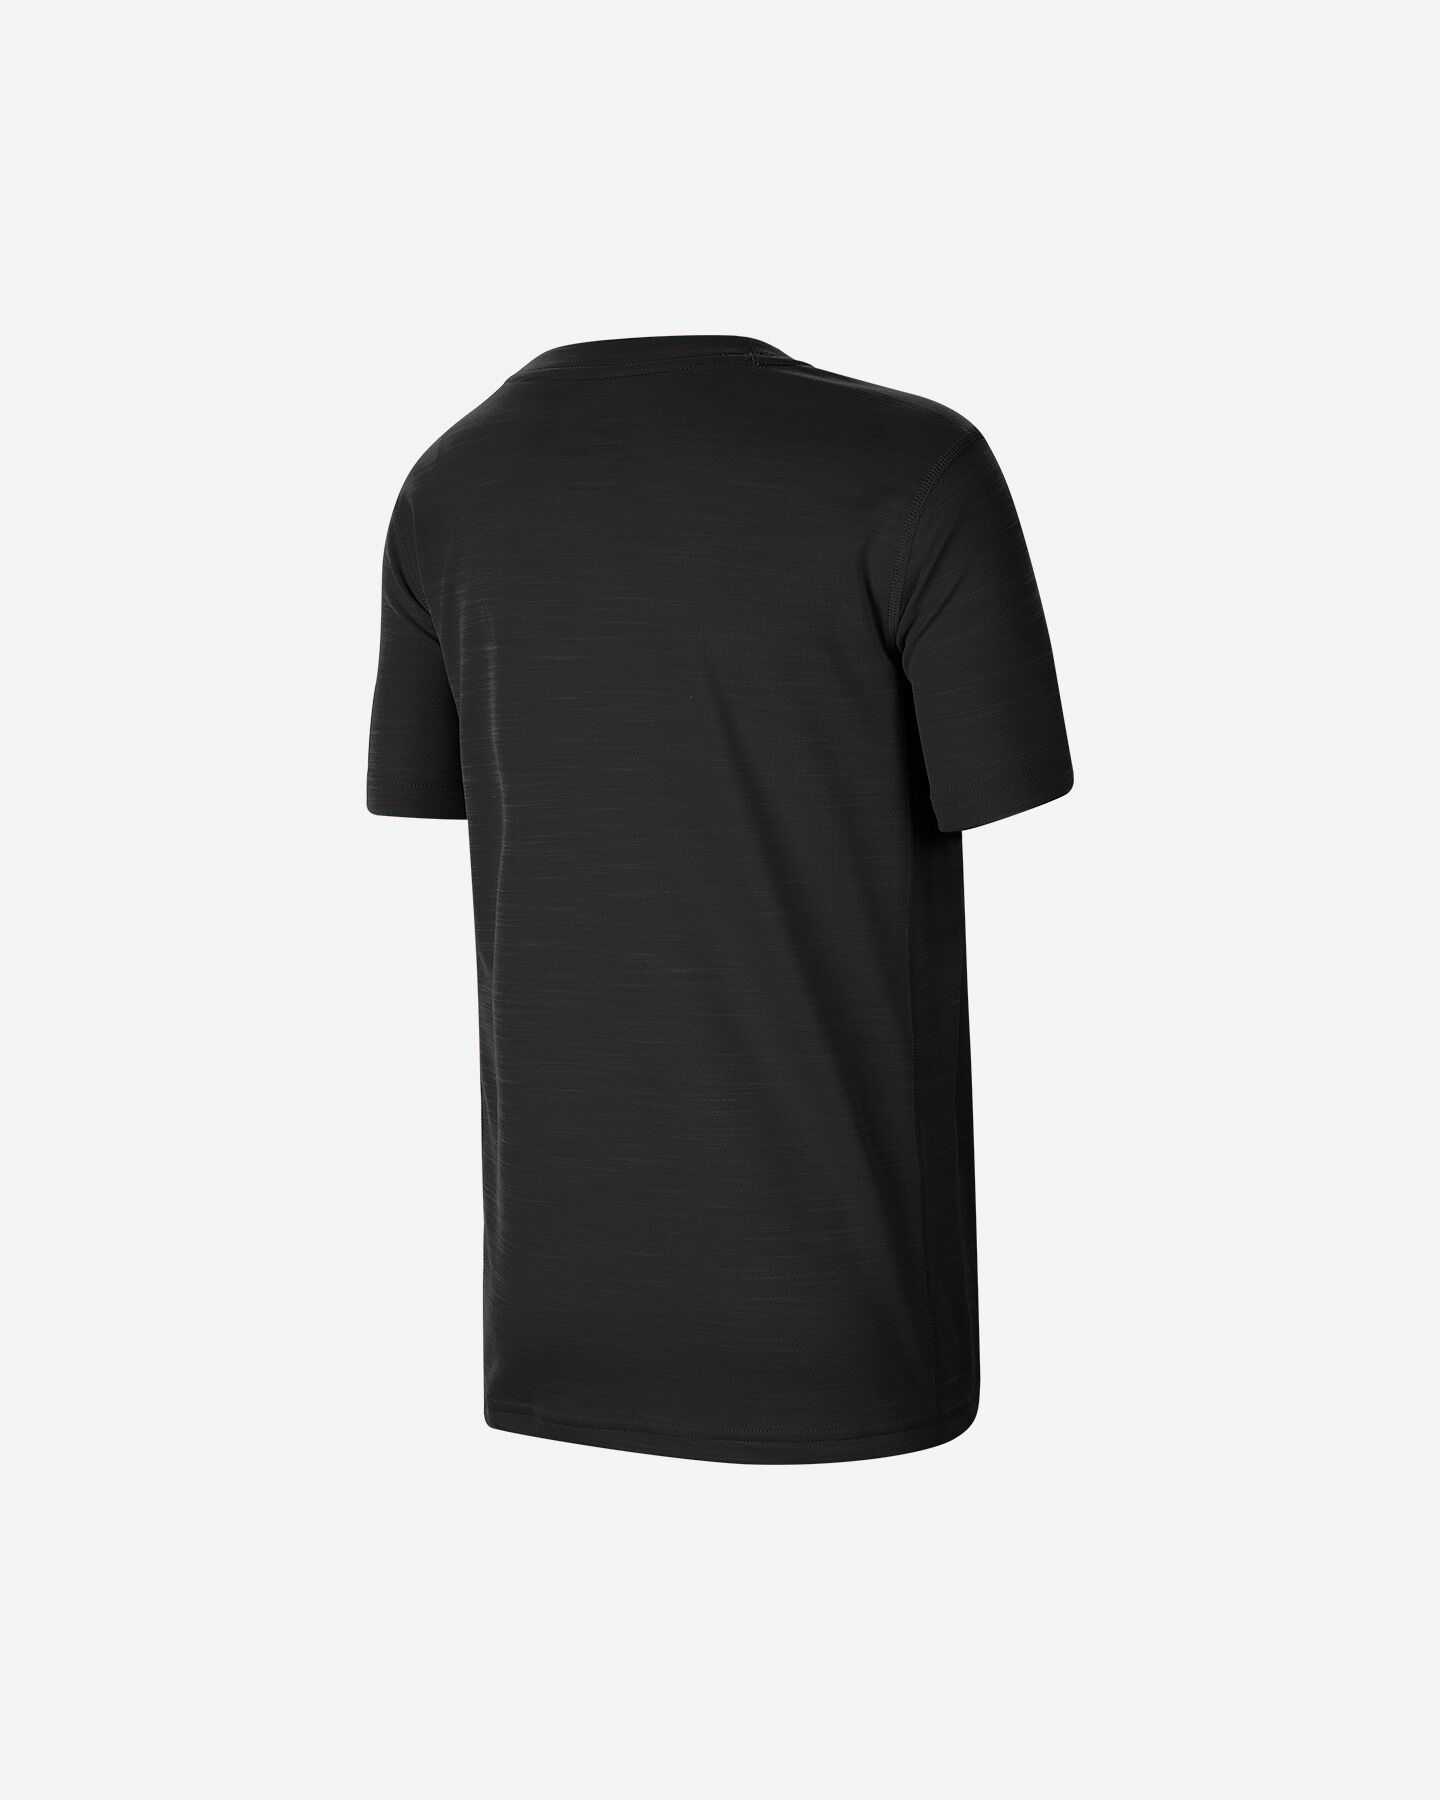  T-Shirt NIKE DRI-FIT SWOOSH JR S5164546|010|S scatto 1